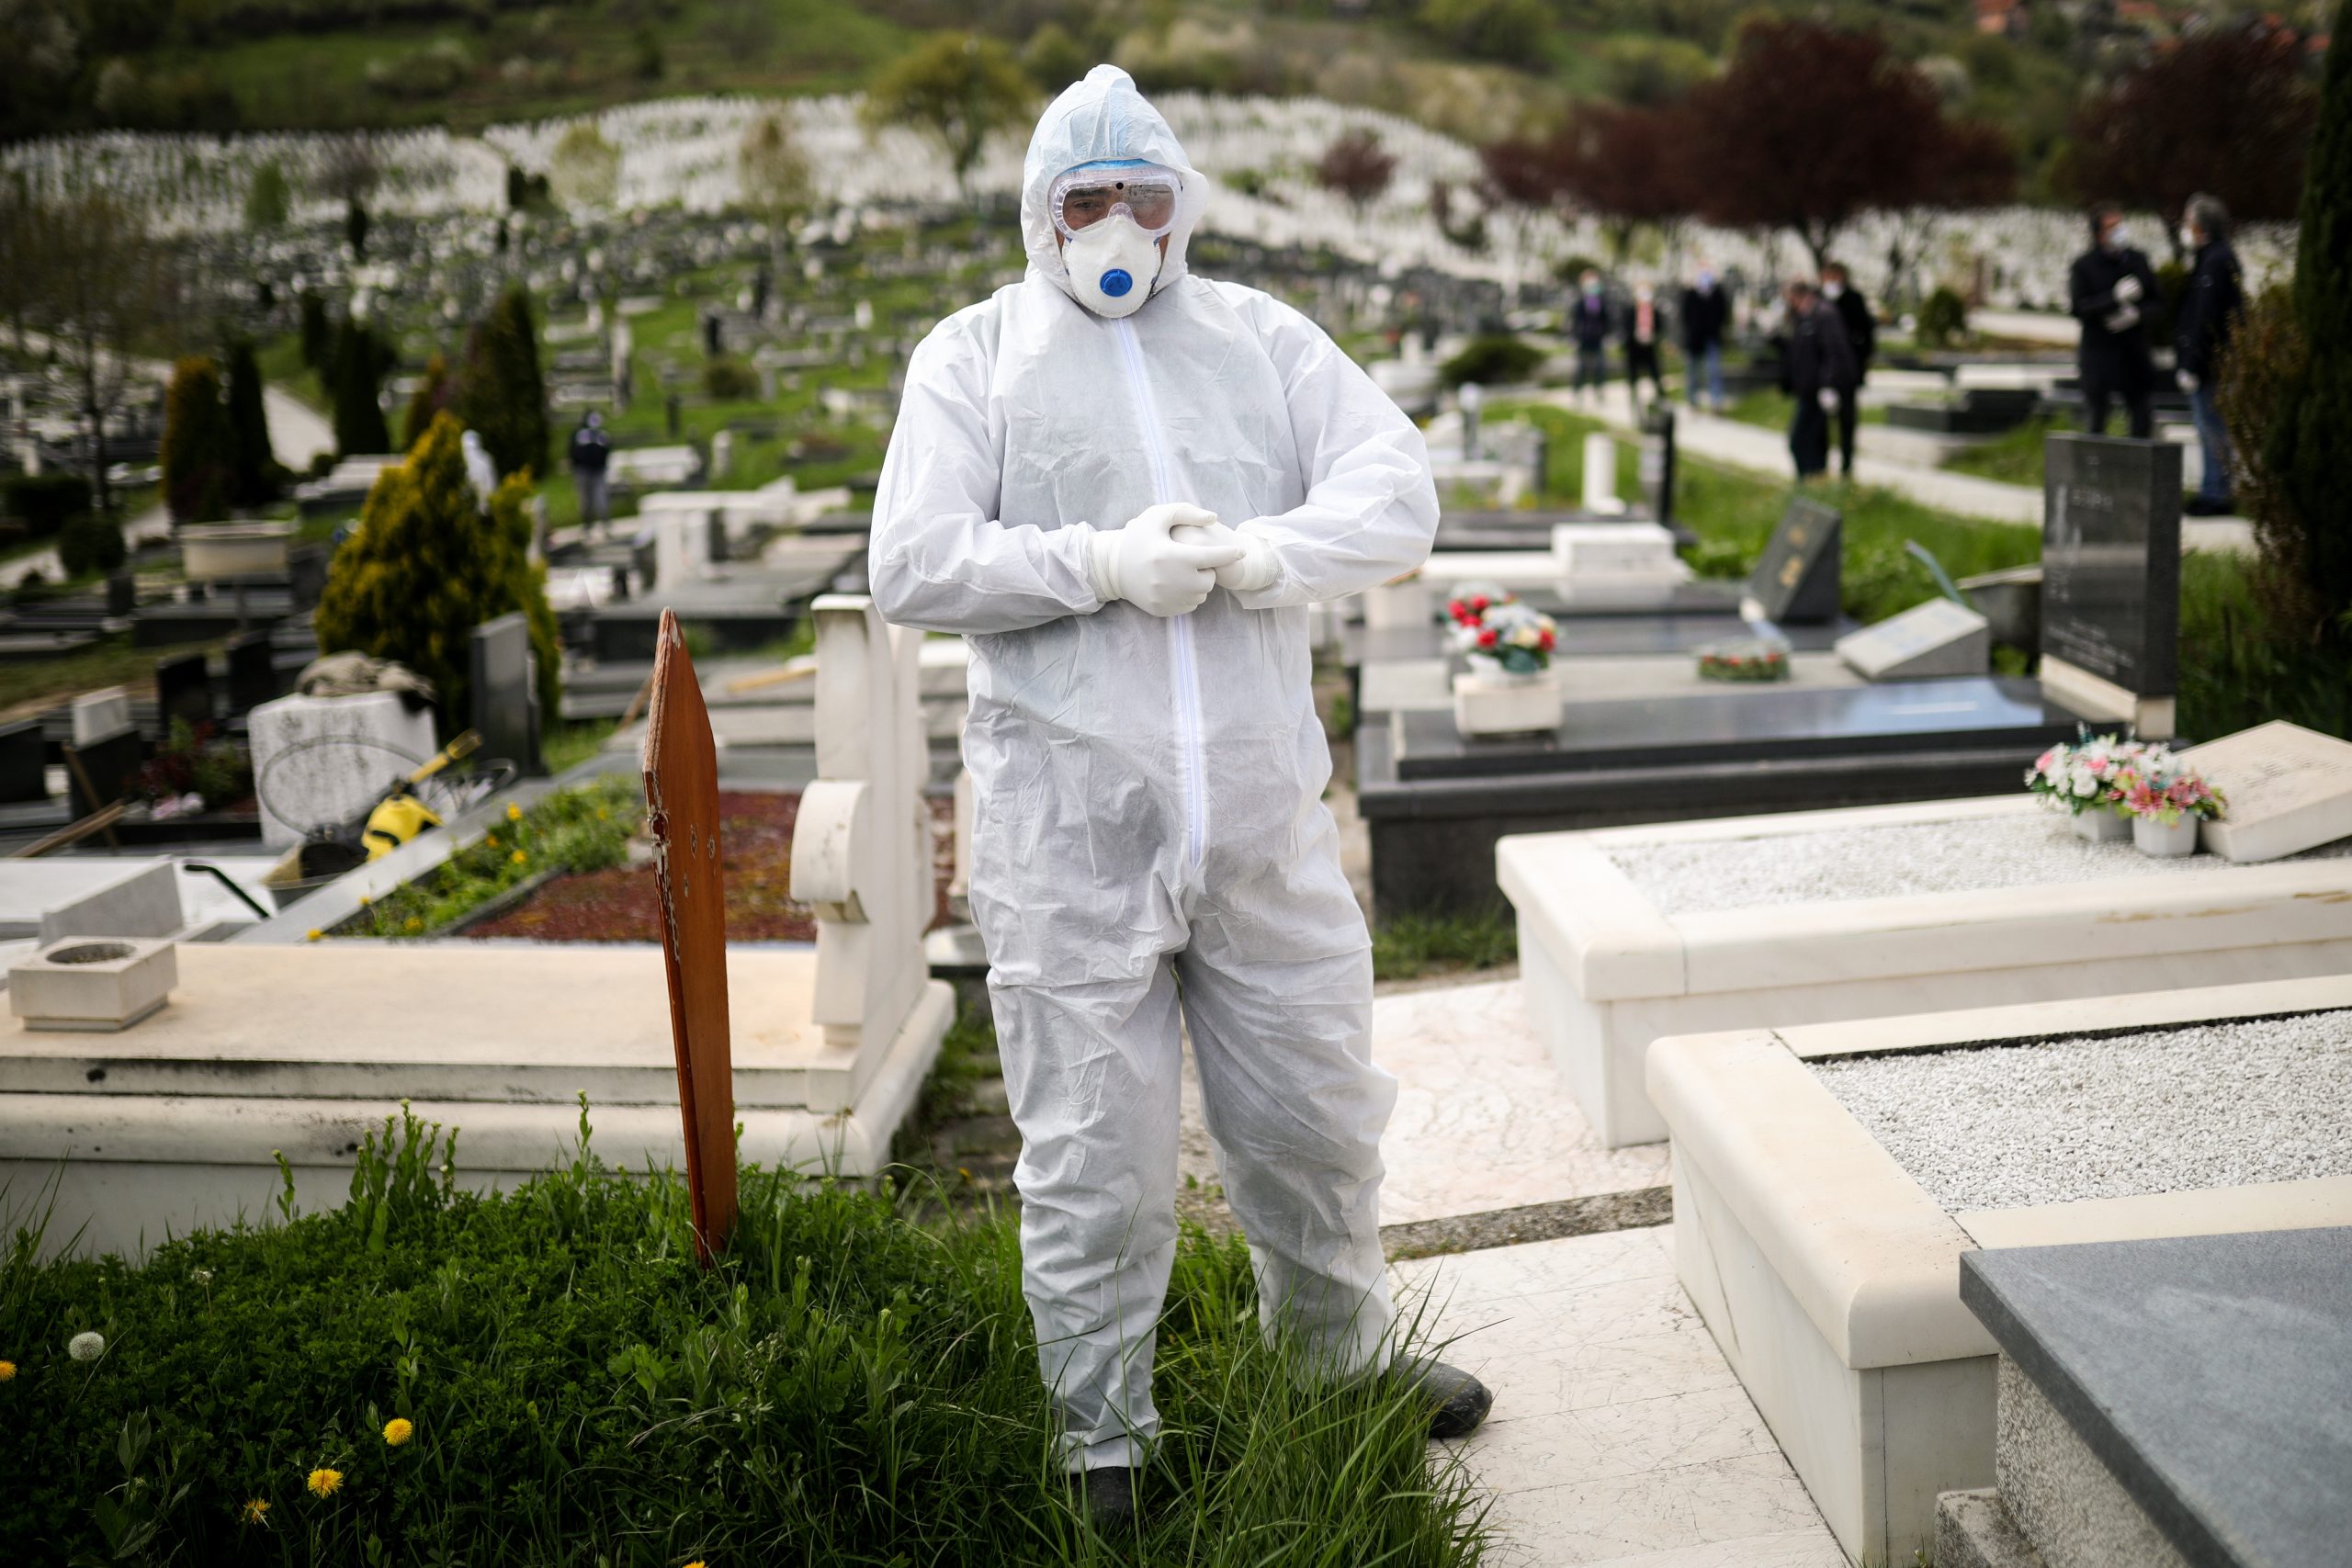 22.04.2020., Sarajevo, Bosna i Hercegovina - Na sarajevskom groblju Bare, odrzana je sahrana pacijenta koji je preminuo od Covid-19 virusa.
Photo: Armin Durgut/PIXSELL